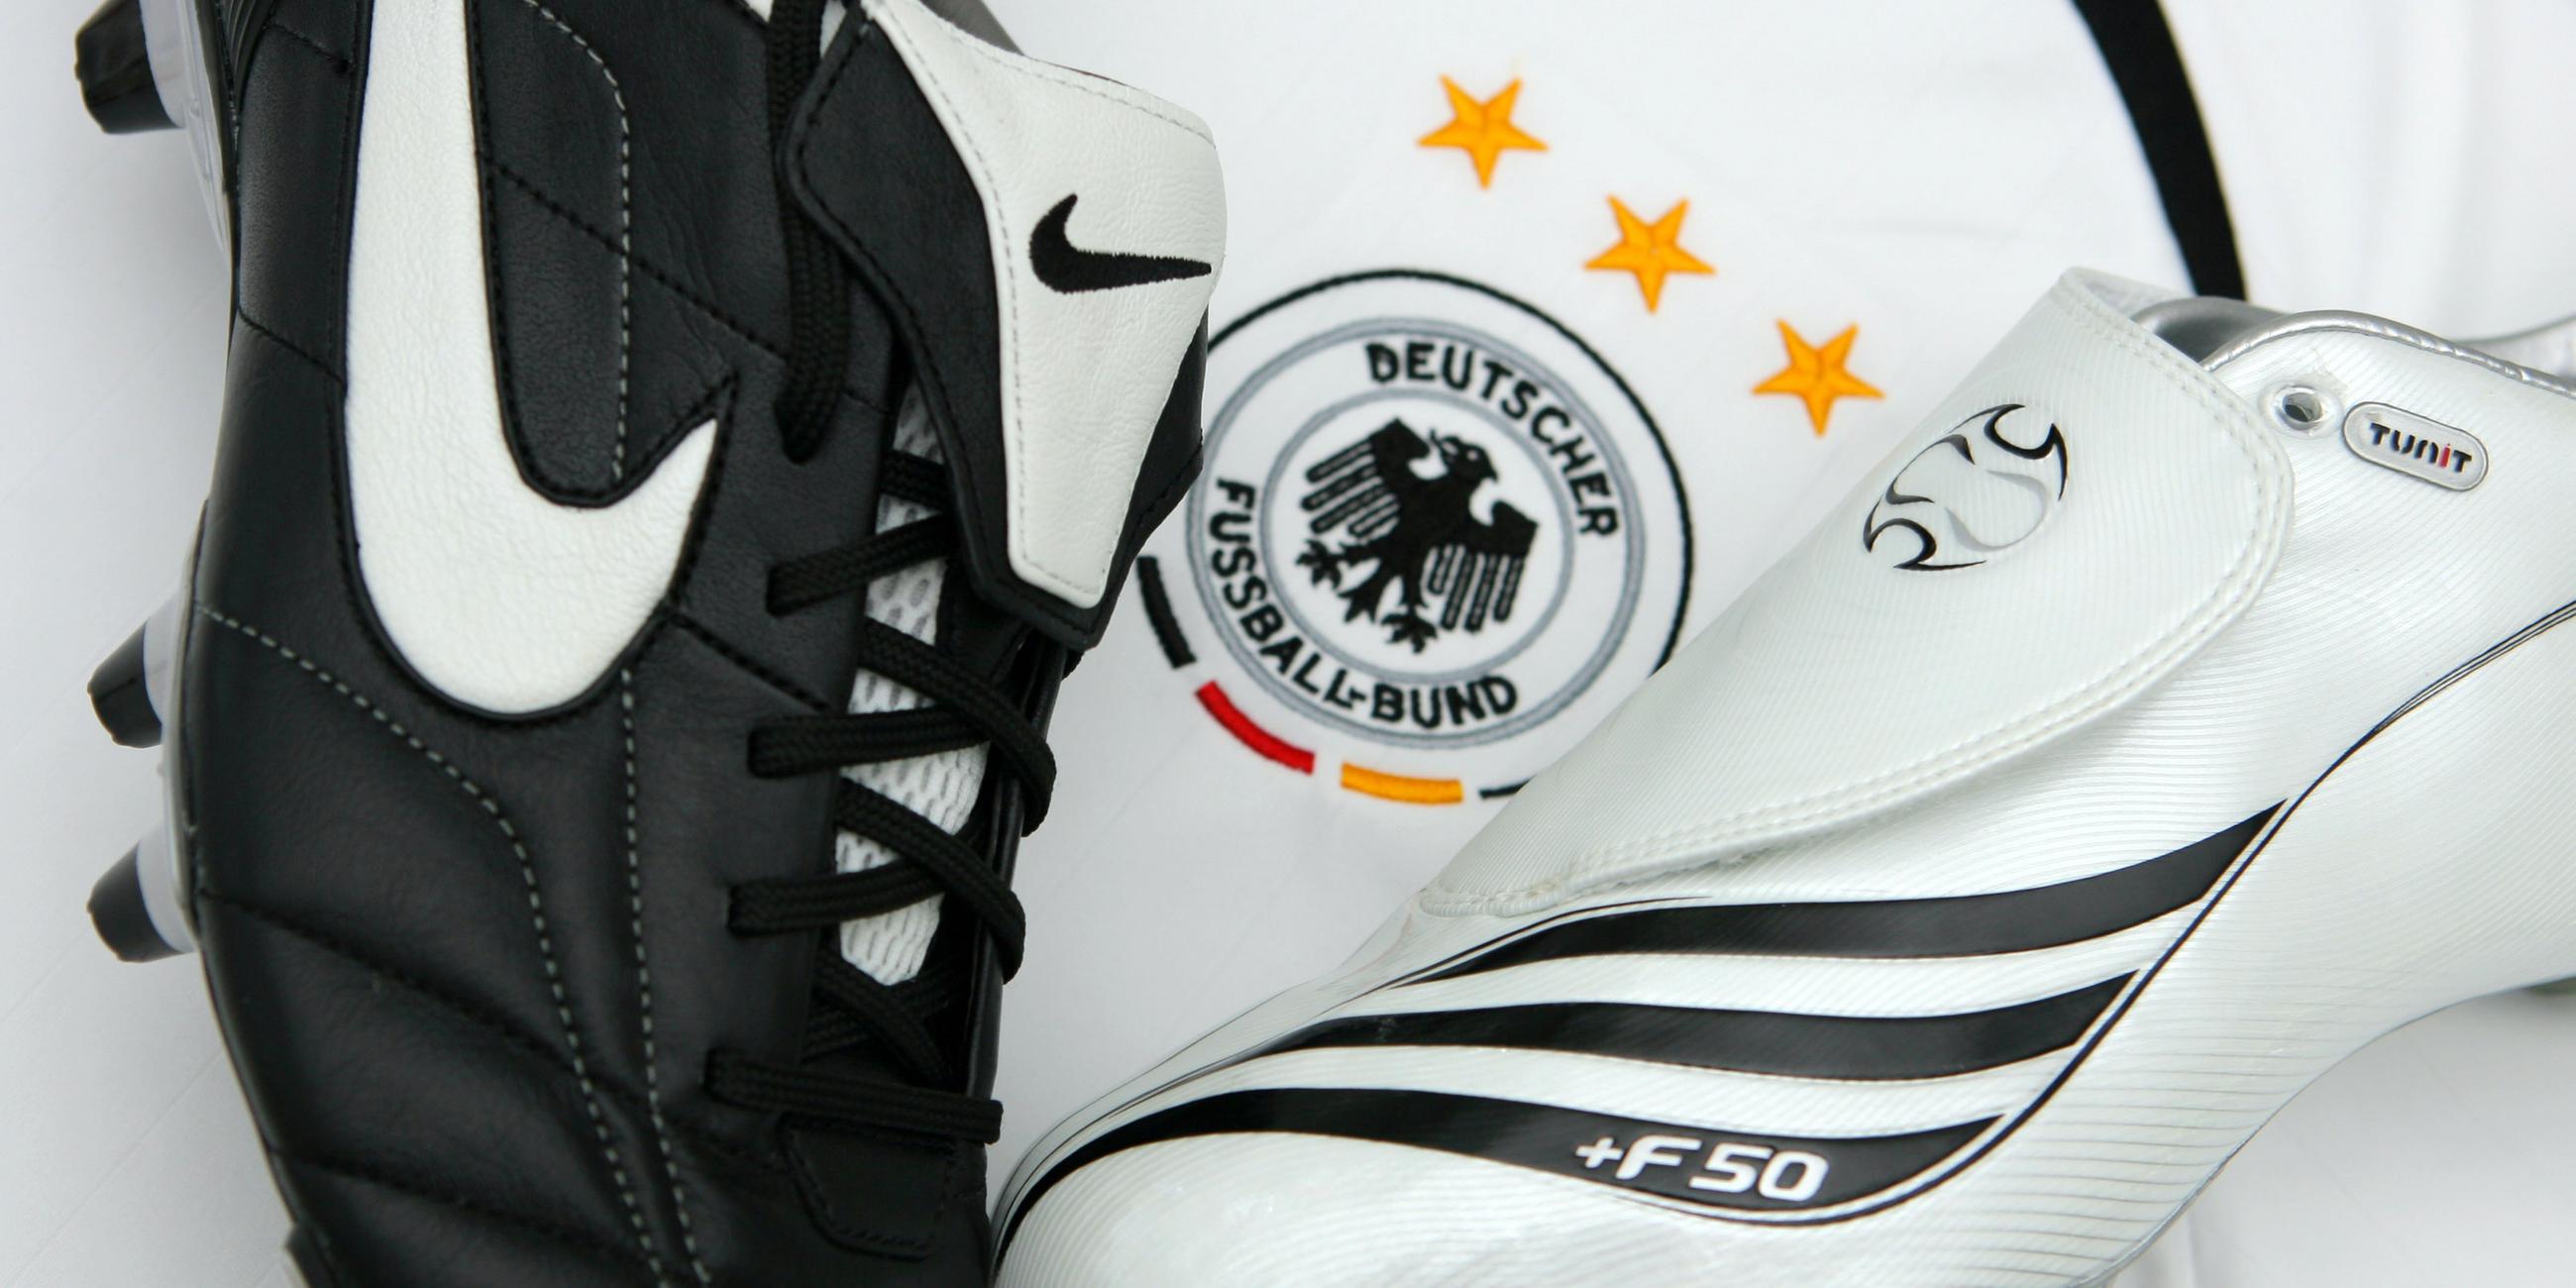 Fußballschuhe des Herzogenauracher Sportartikelherstellers Adidas (r) und der US-Firma Nike liegen auf einem Trikot der deutschen Fußball-Nationalmannschaft.